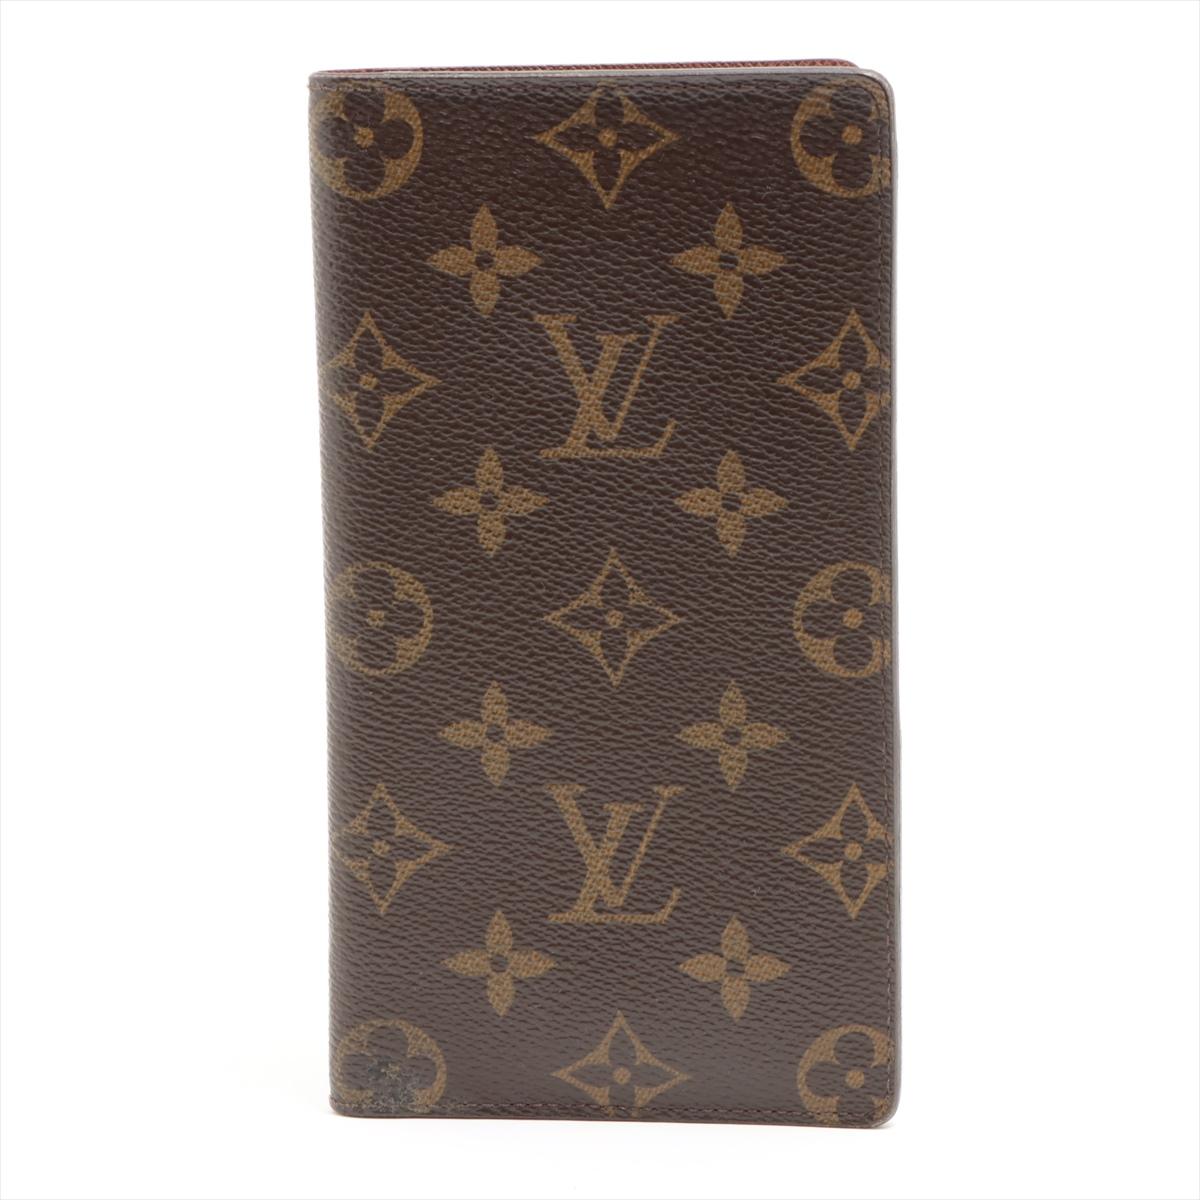 Die Louis Vuitton Monogram Checkbook Long Wallet ist ein raffiniertes und praktisches Accessoire, das ikonisches Design und Funktionalität nahtlos miteinander verbindet. Das Portemonnaie aus klassischem Monogram Canvas ist mit dem zeitlosen